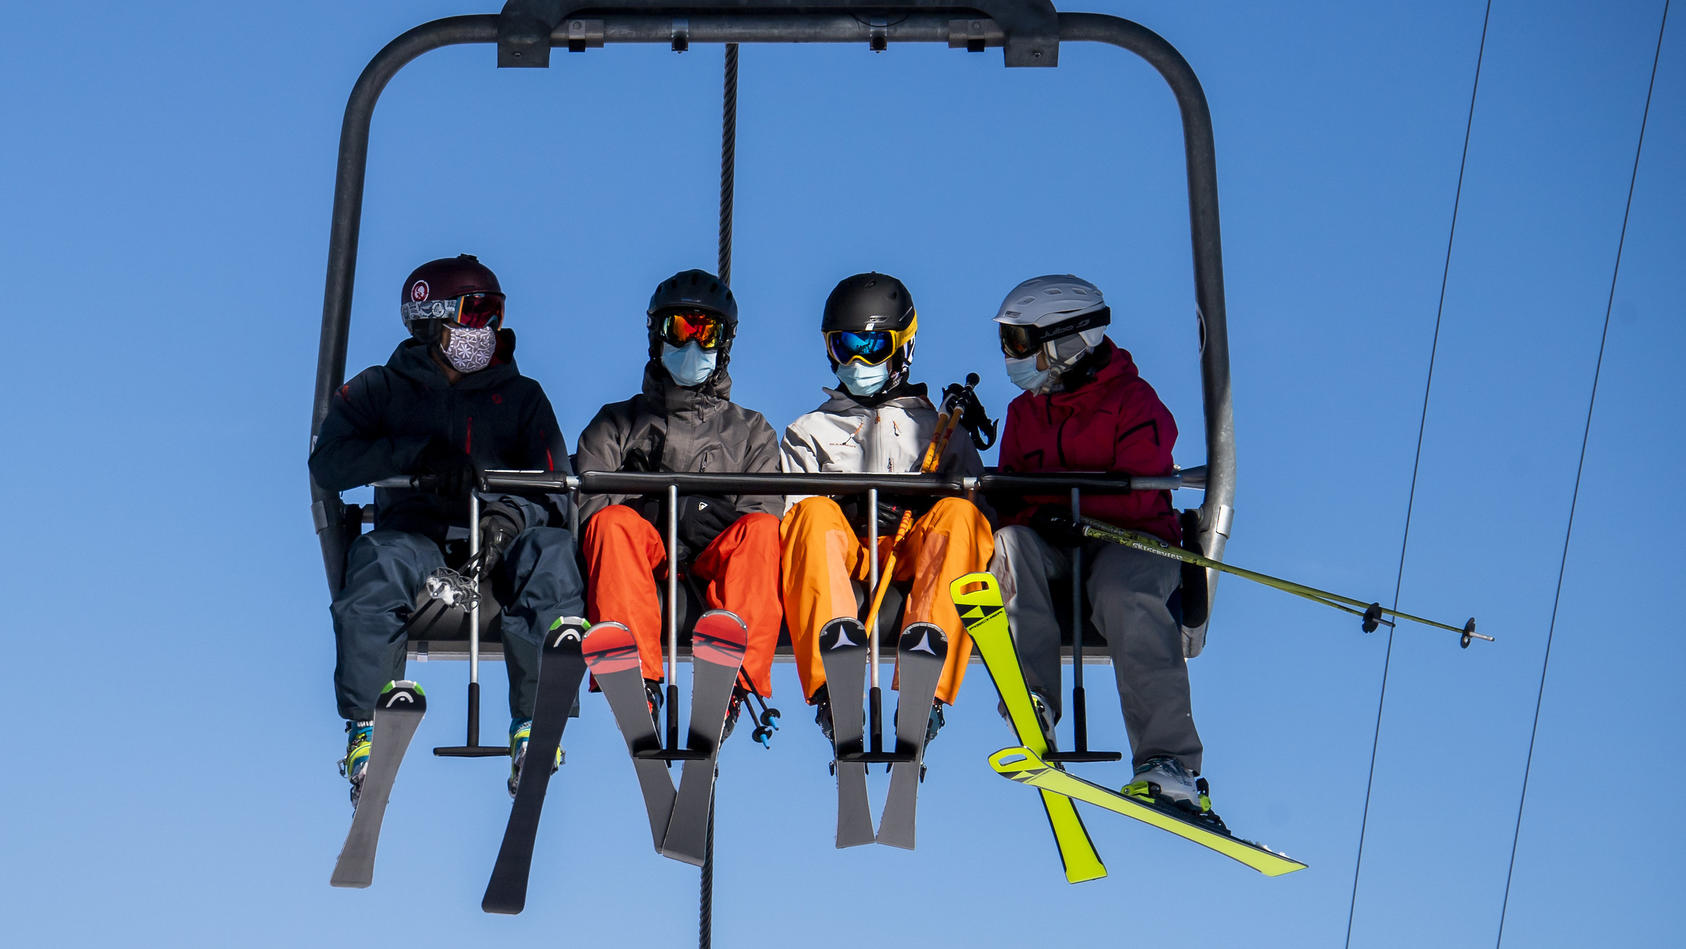 Der Tourismusbeauftragte der Bundesregierung, Thomas Bareiß, will trotz Corona kein Verbot der Skisaison